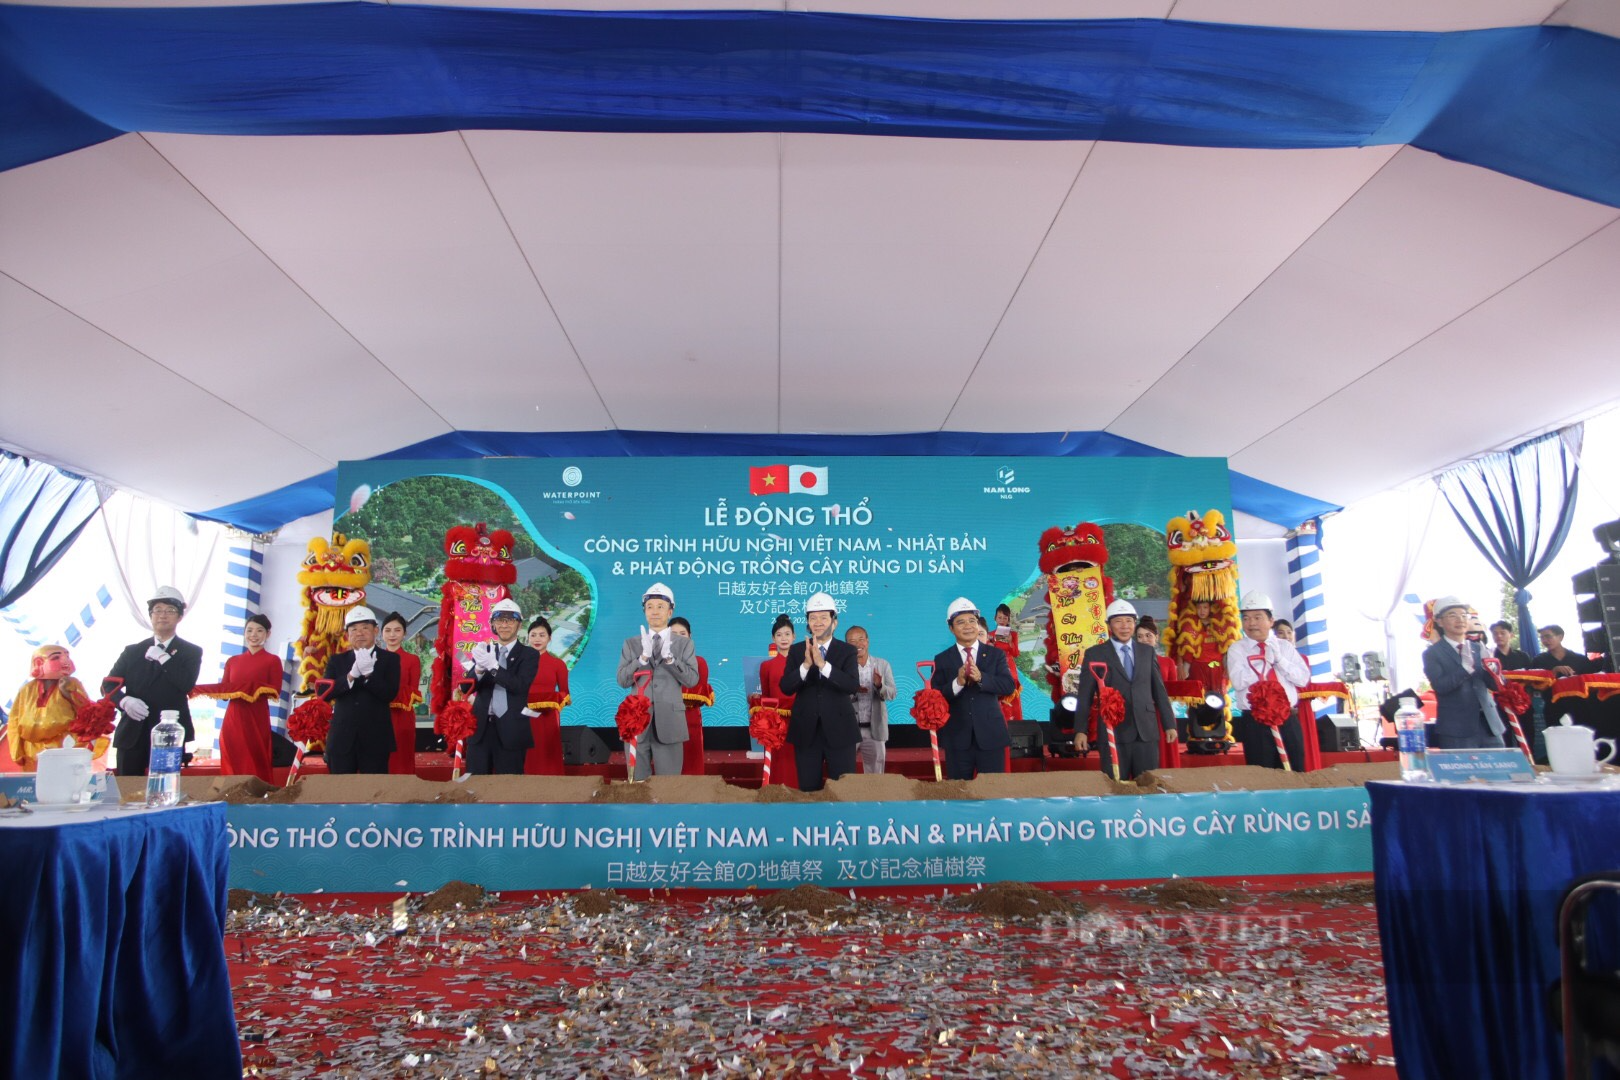 Nguyên chủ tịch nước Trương Tấn Sang tham dự lễ Động thổ công trình hữu nghị Việt Nam - Nhật Bản tại Long An - Ảnh 2.